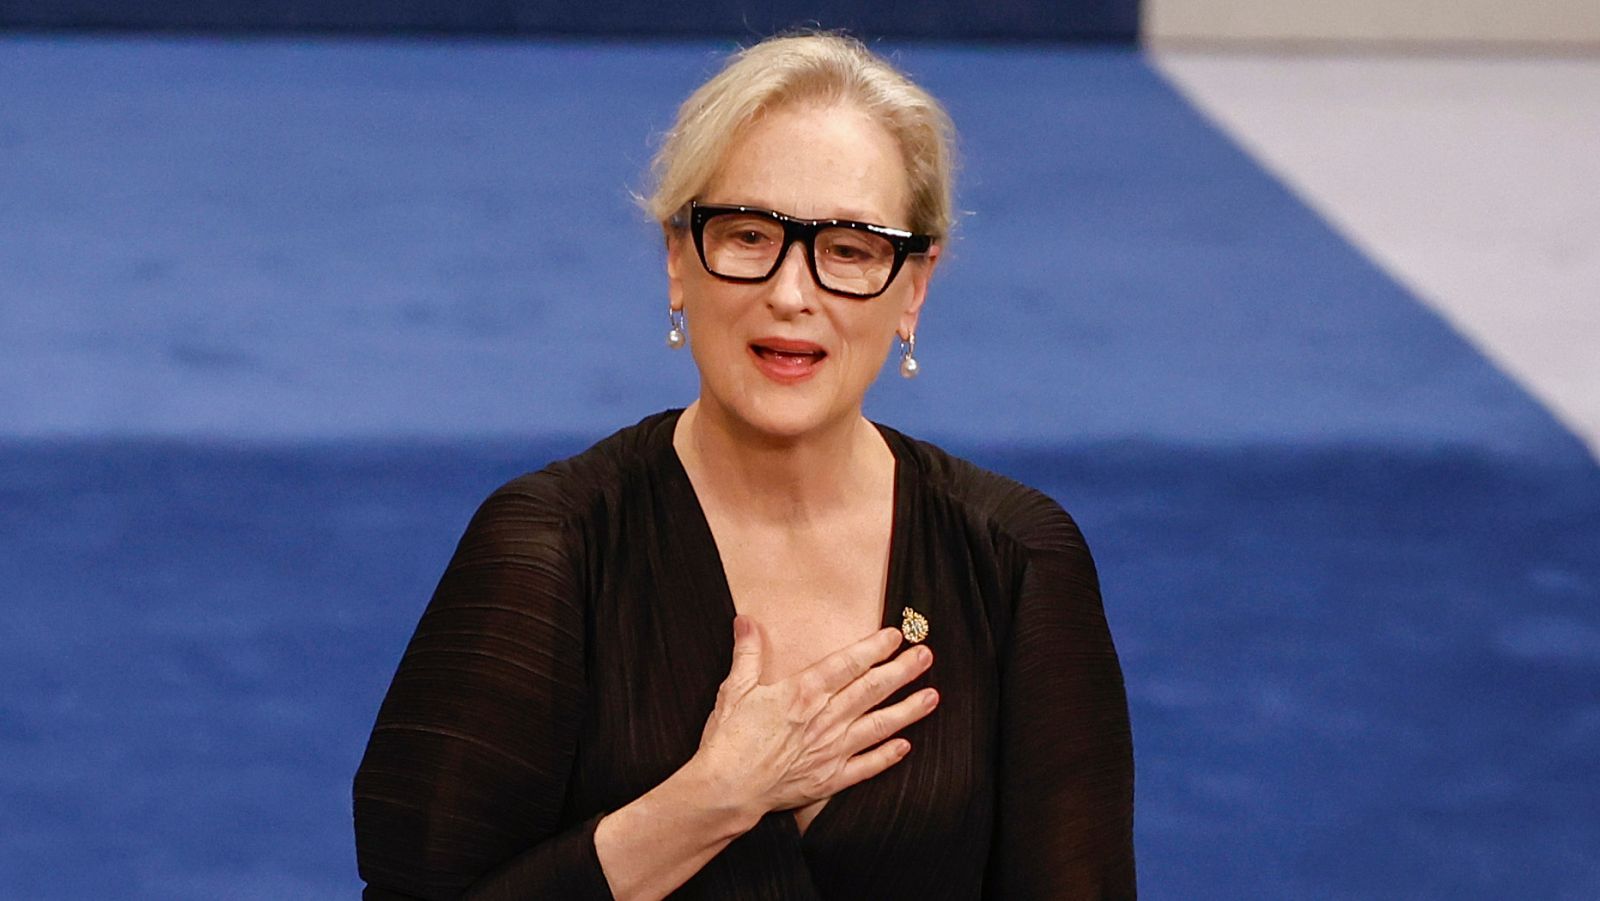 Premios Princesa de Asturias | Meryl Streep: "La empatía es una forma radical de diplomacia"